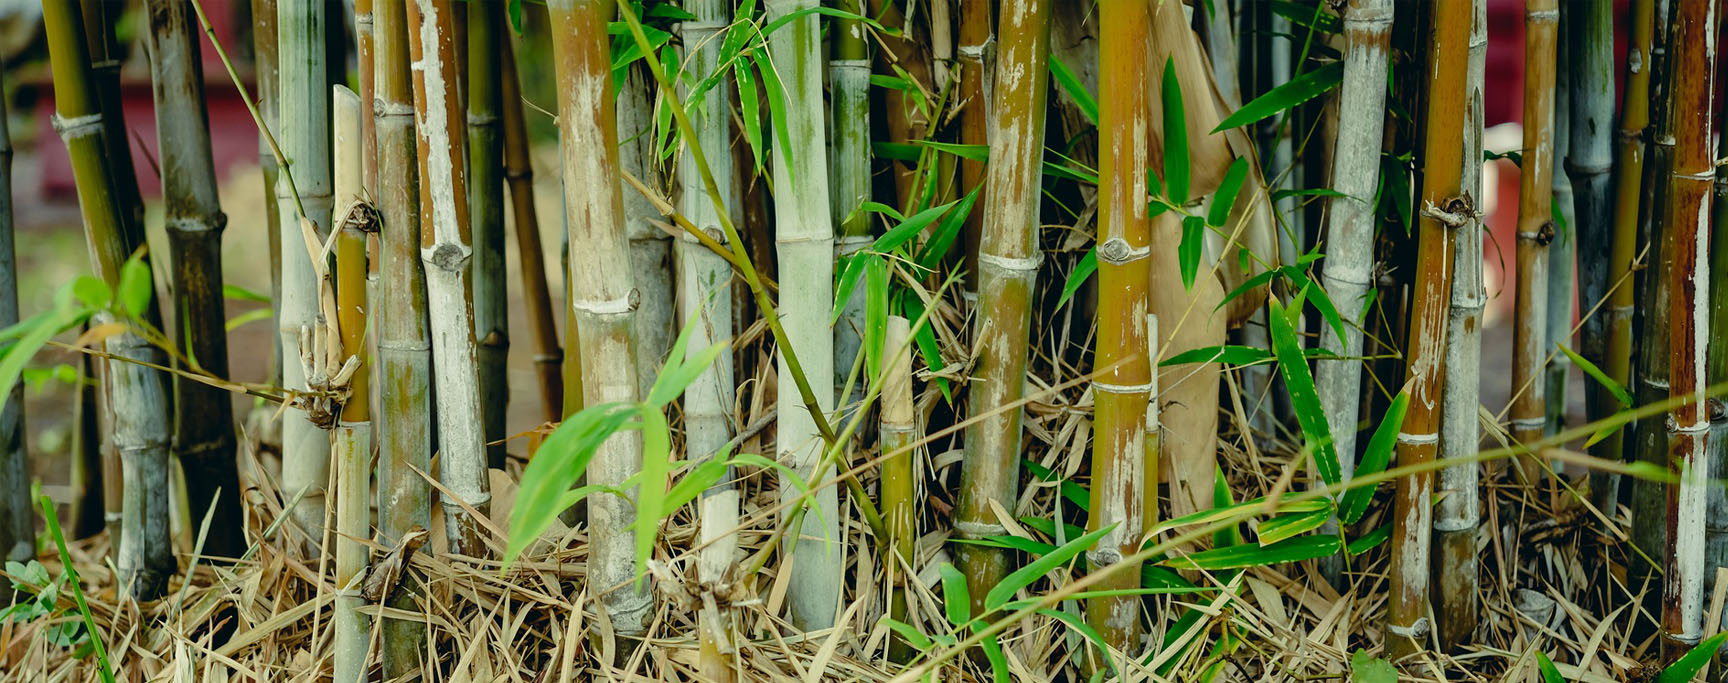 planter bambou